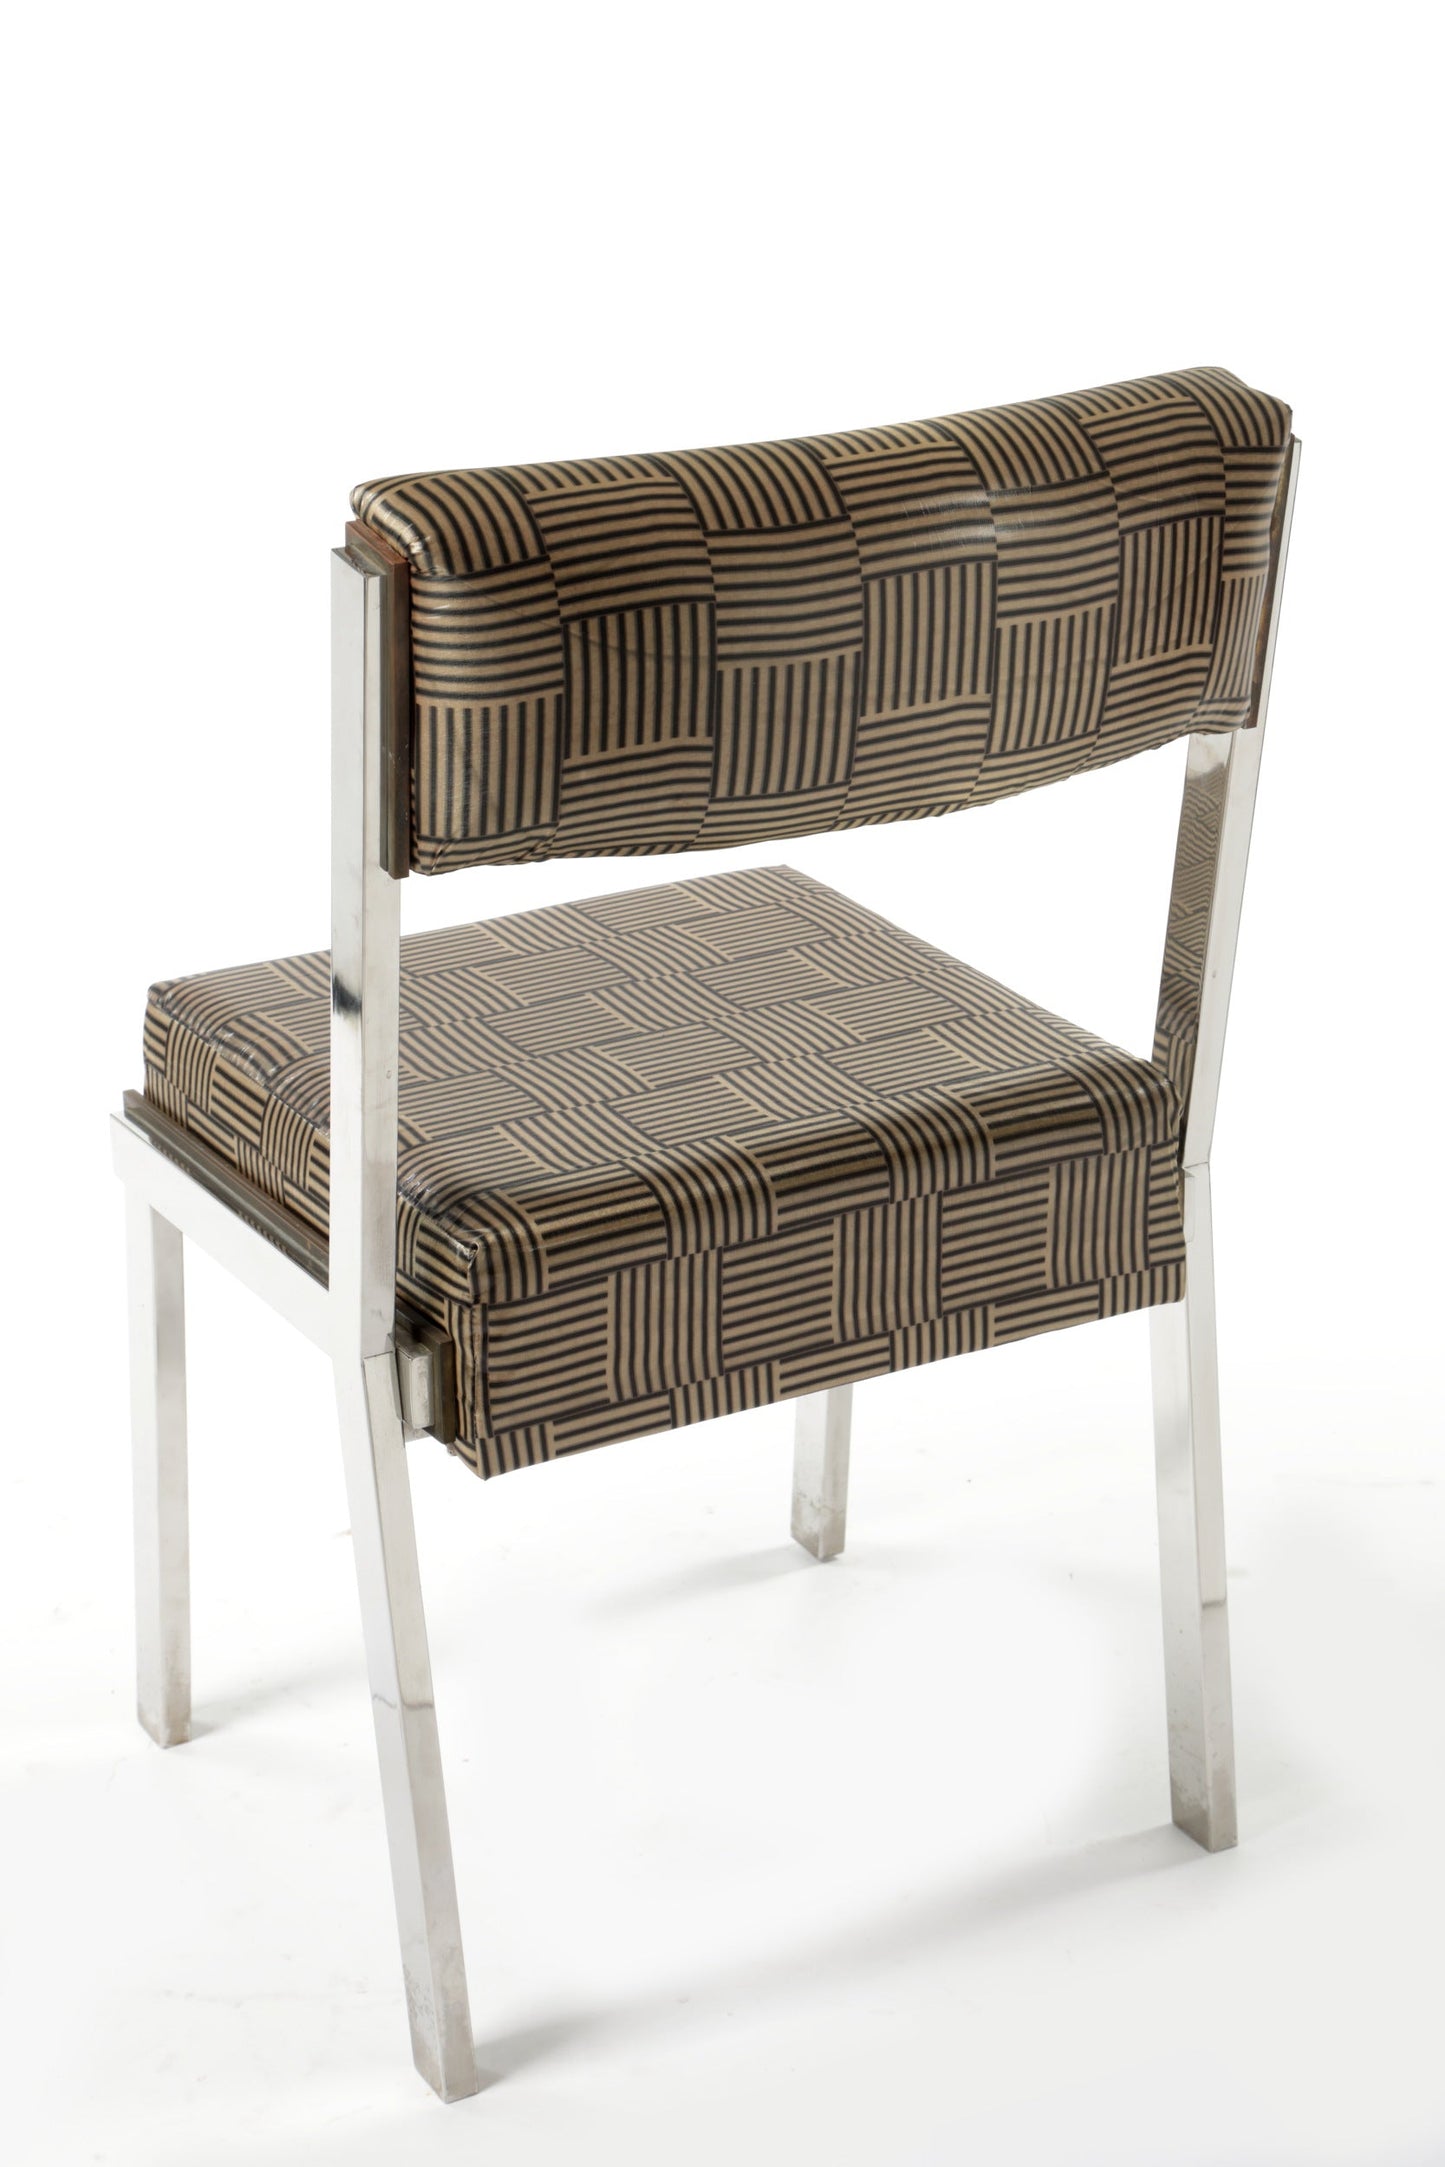 Four 70s steel chairs reinterpreted triplef